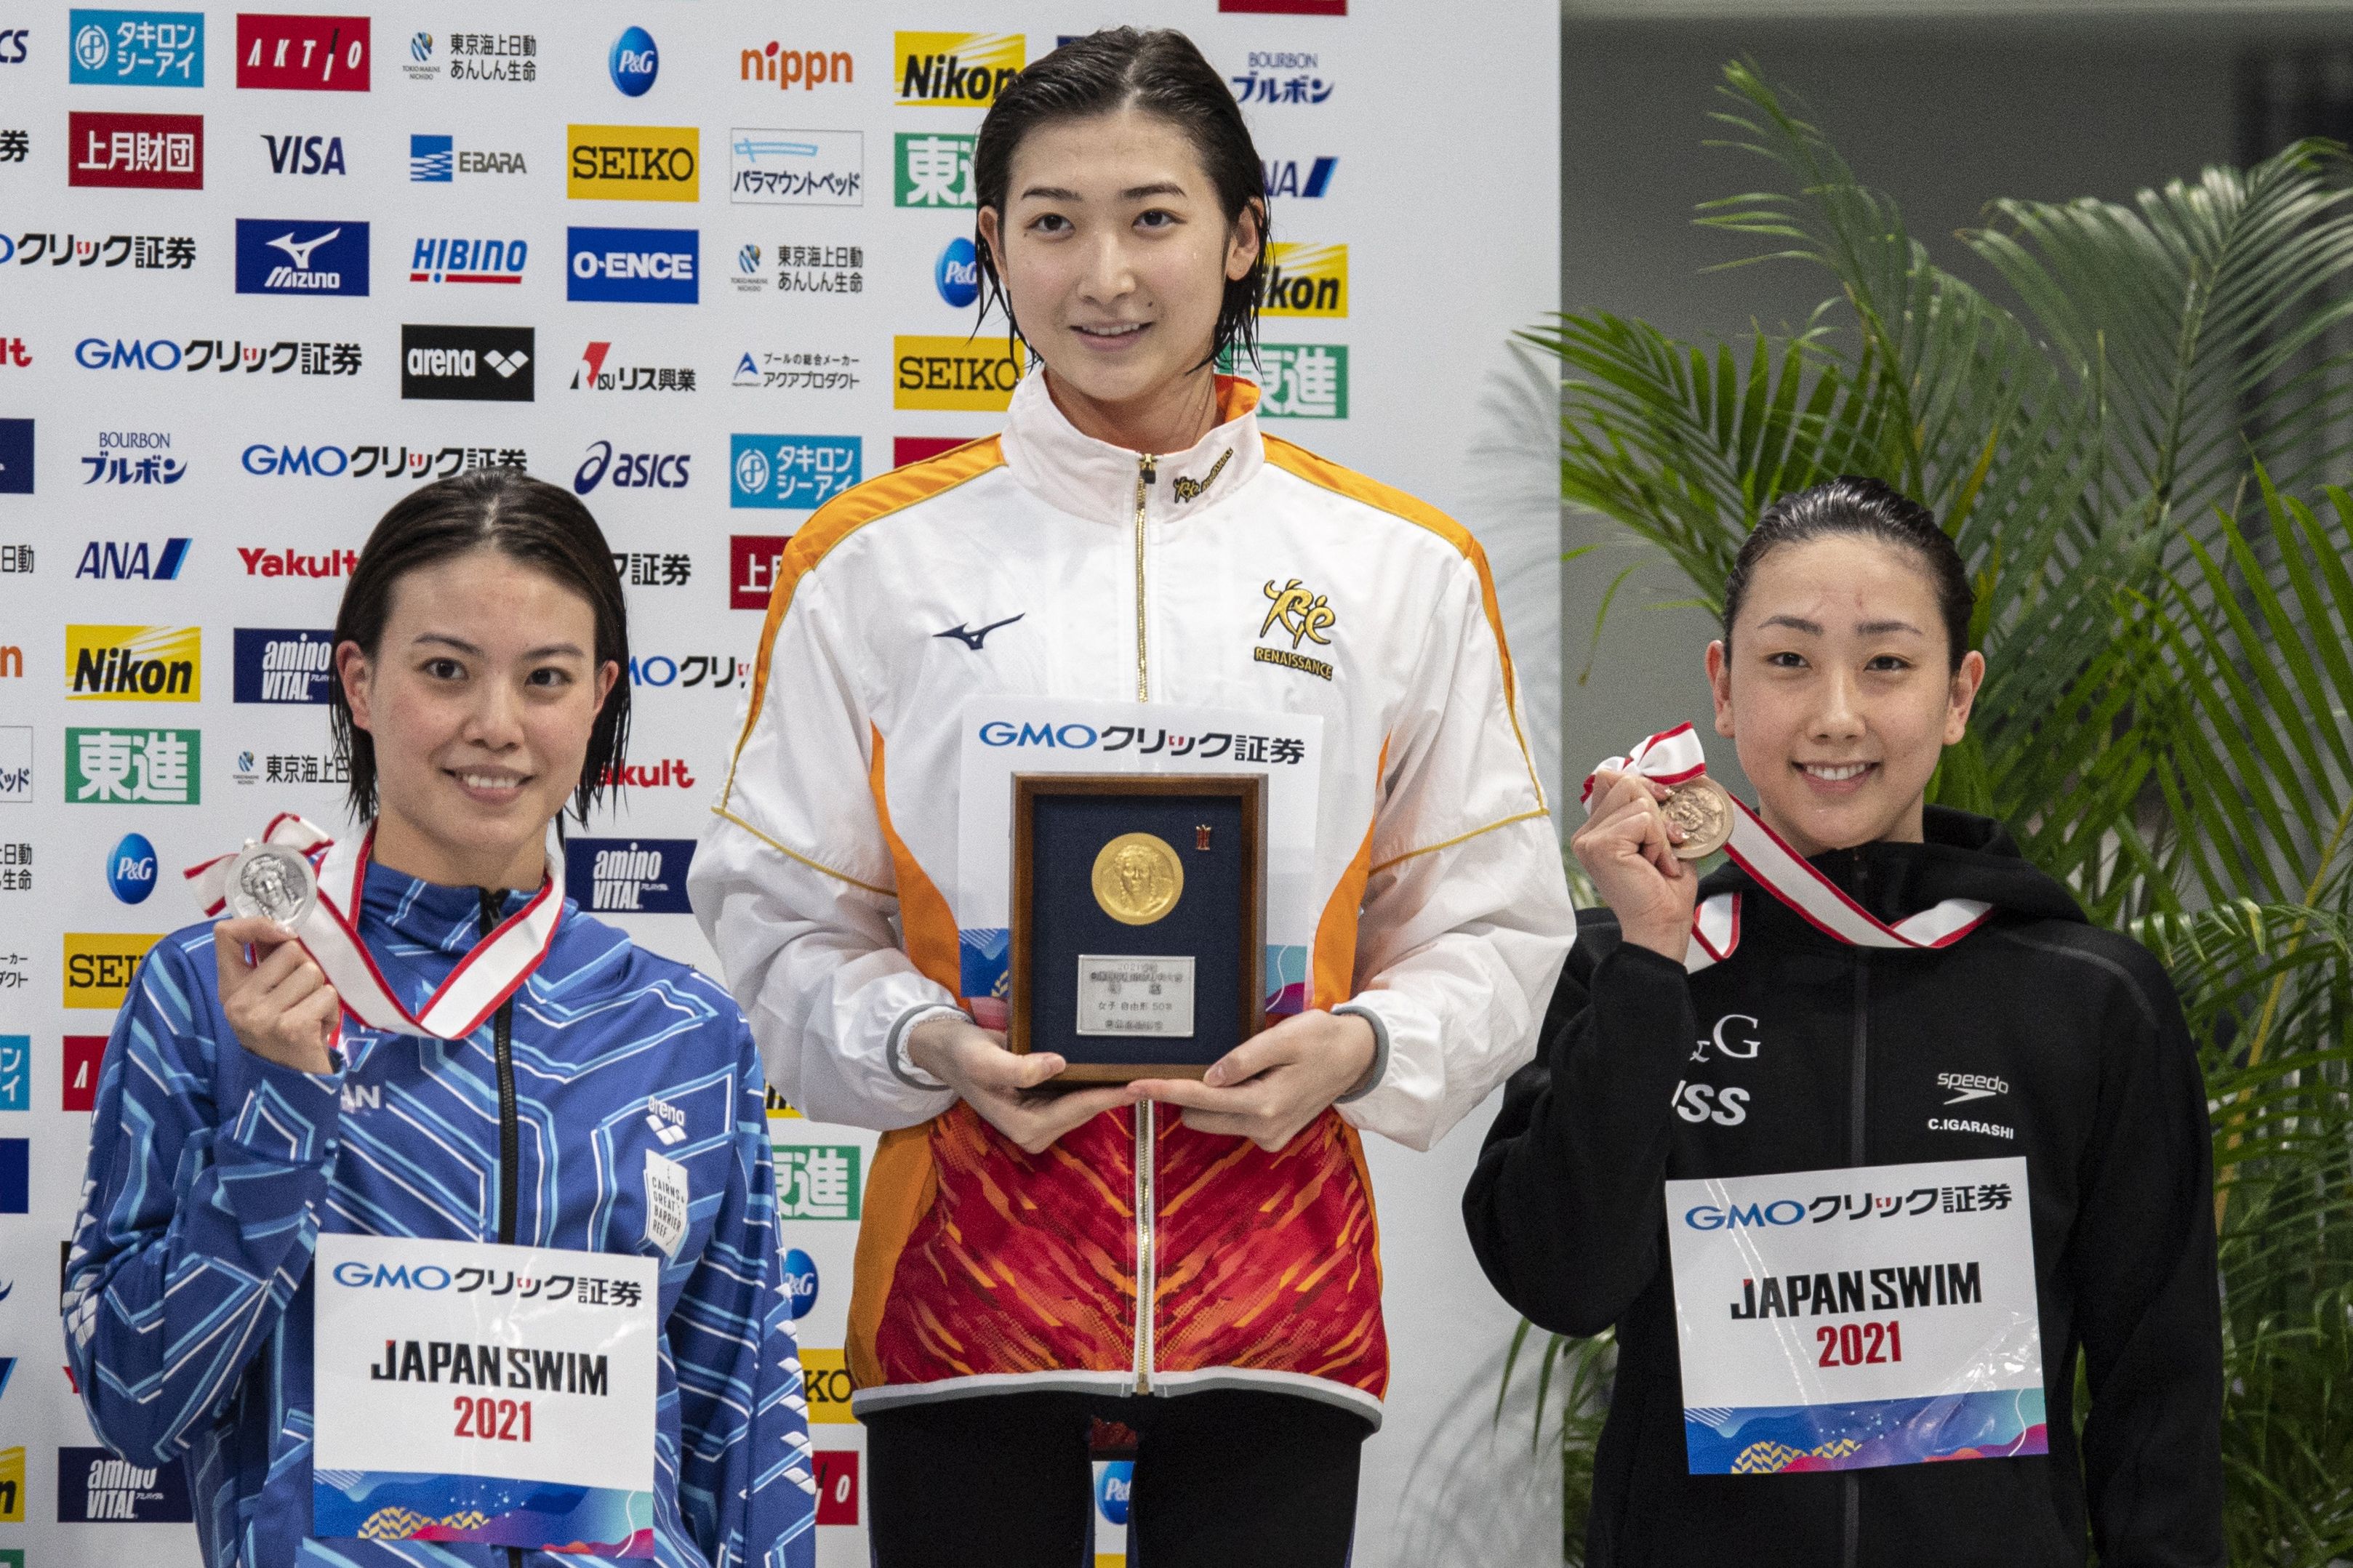 白血病战士池江璃花子（中）在日本全国锦标赛包揽4冠，将在东京奥运上至少参赛两项。图为她在50公尺自由泳决赛夺金牌后领奖。（法新社照片）

